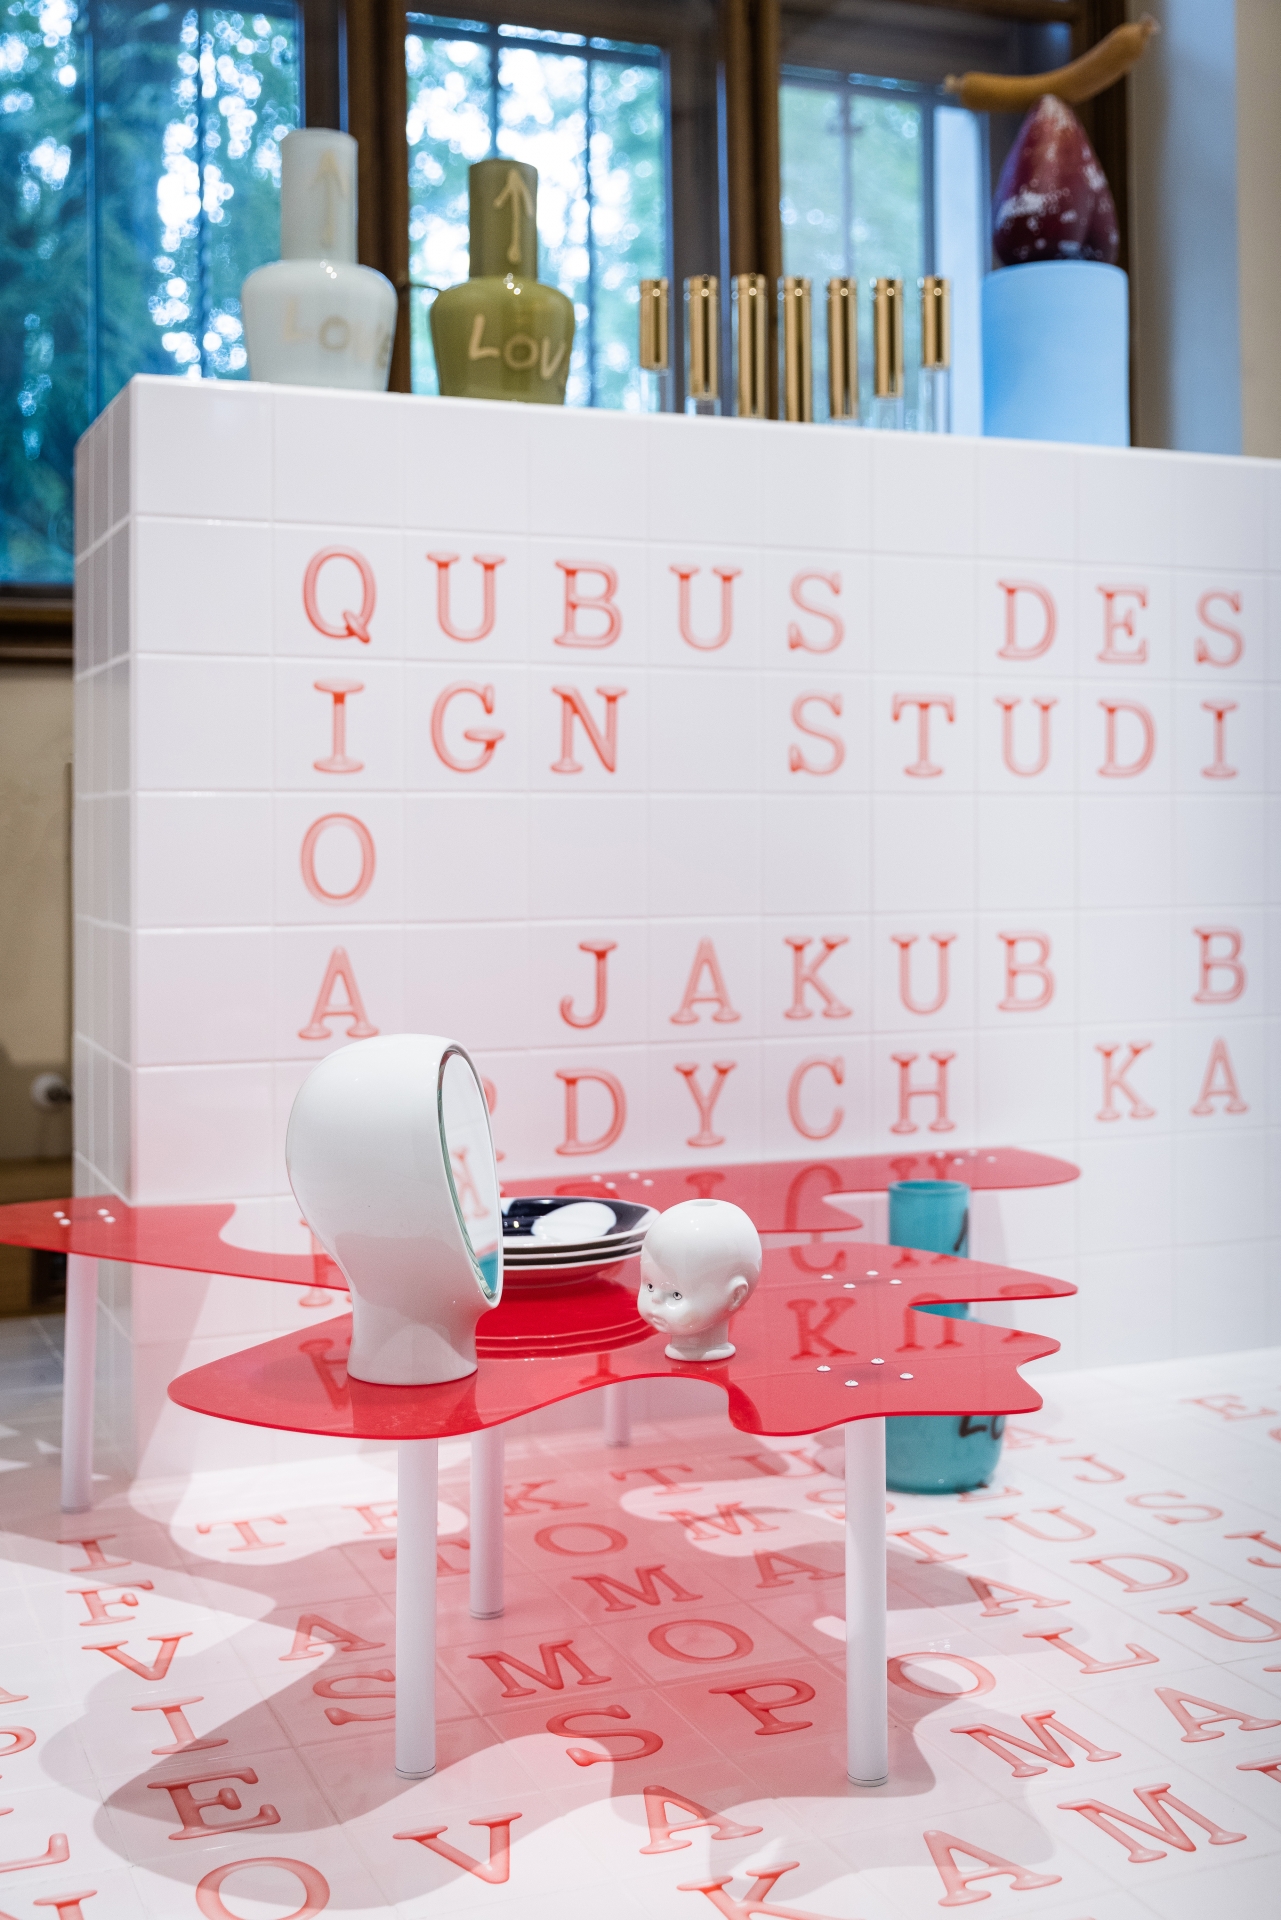 QUBUS Design Studio